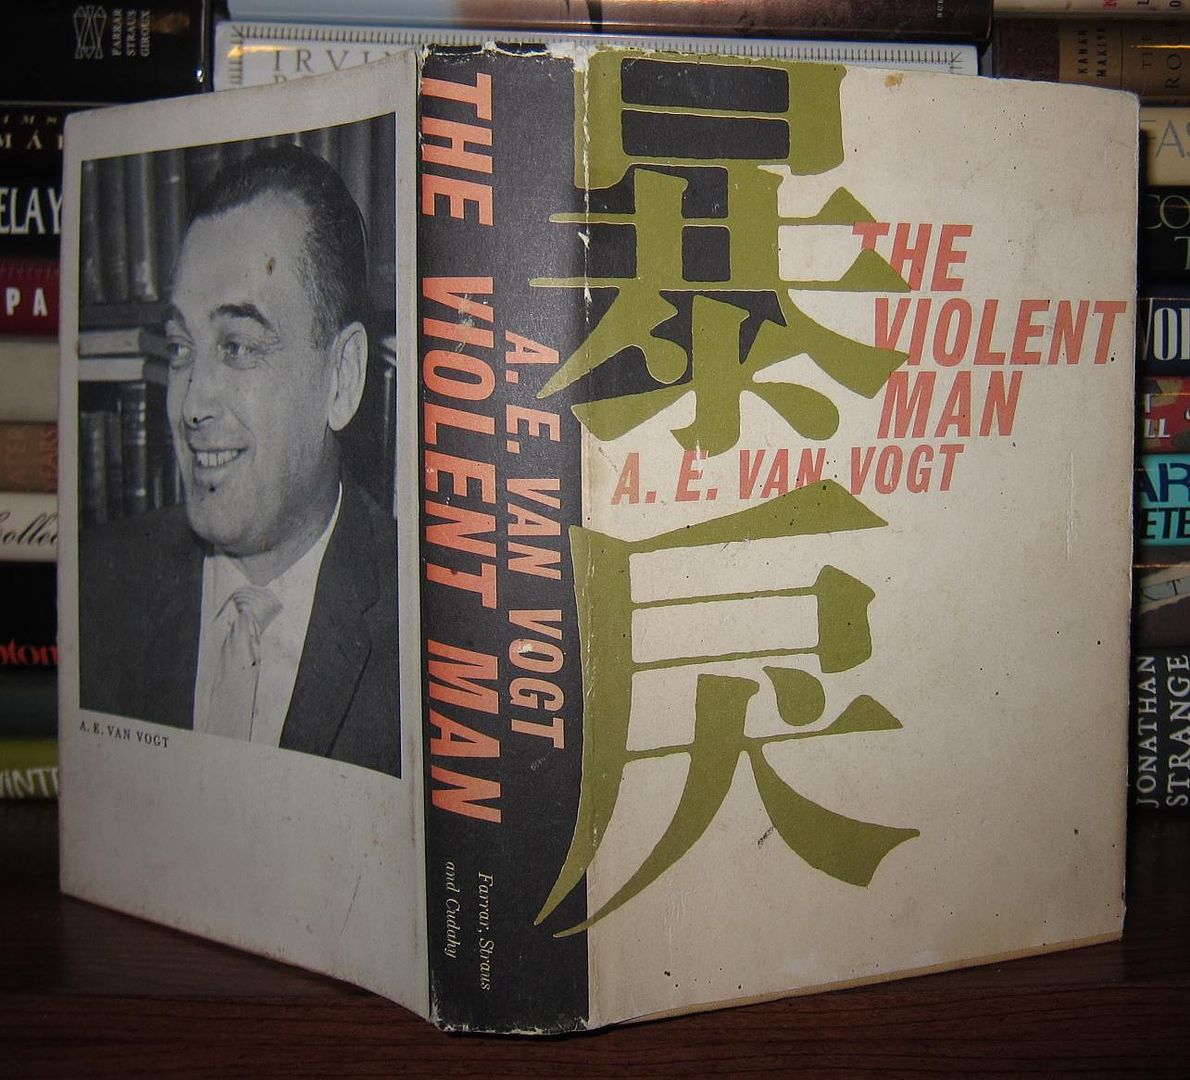 VAN VOGT, A. E. - The Violent Man